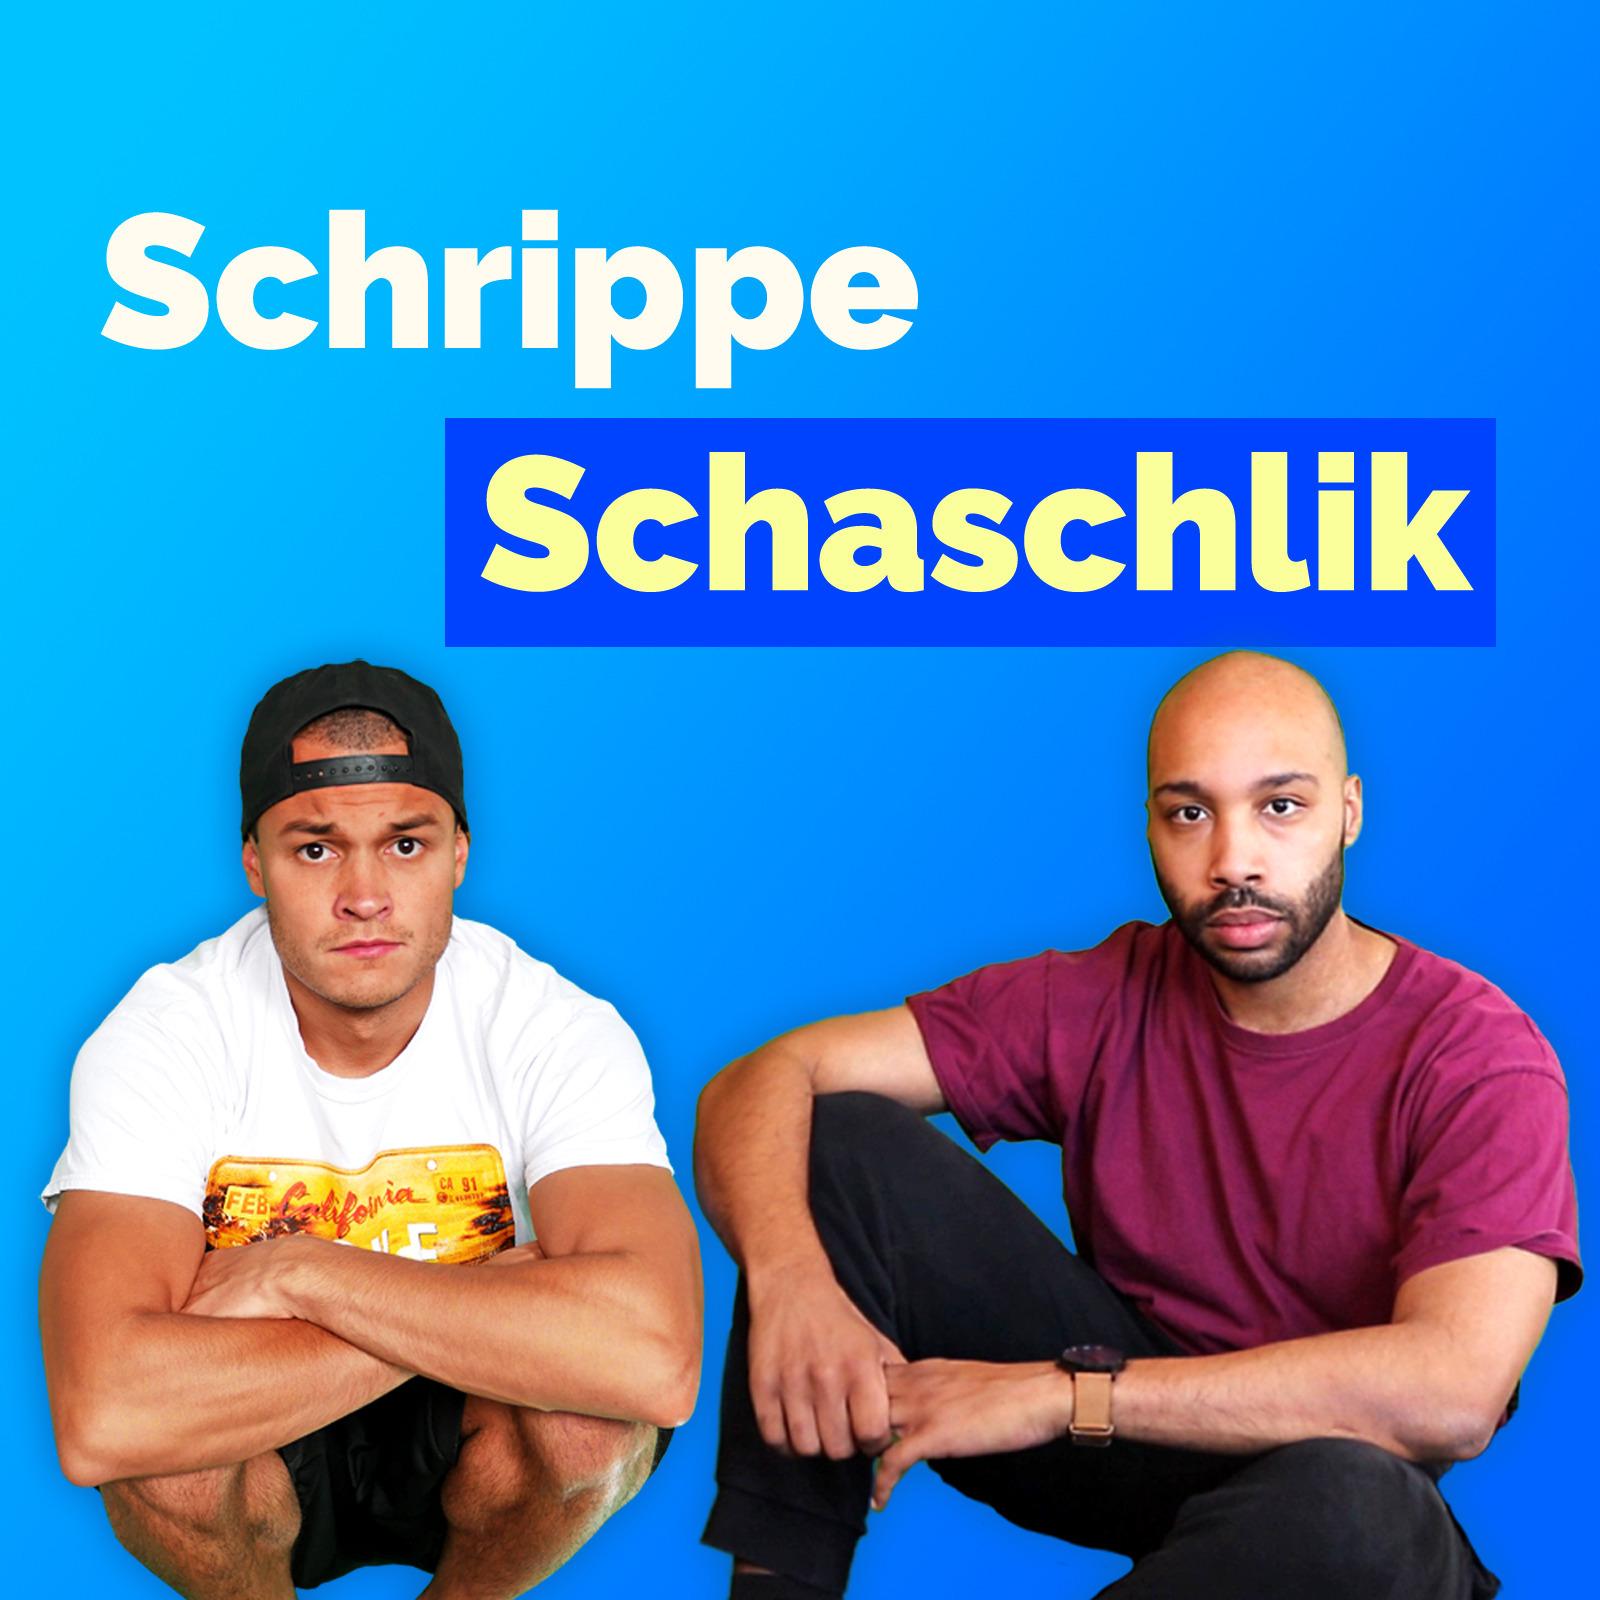 Schrippe Schaschlik